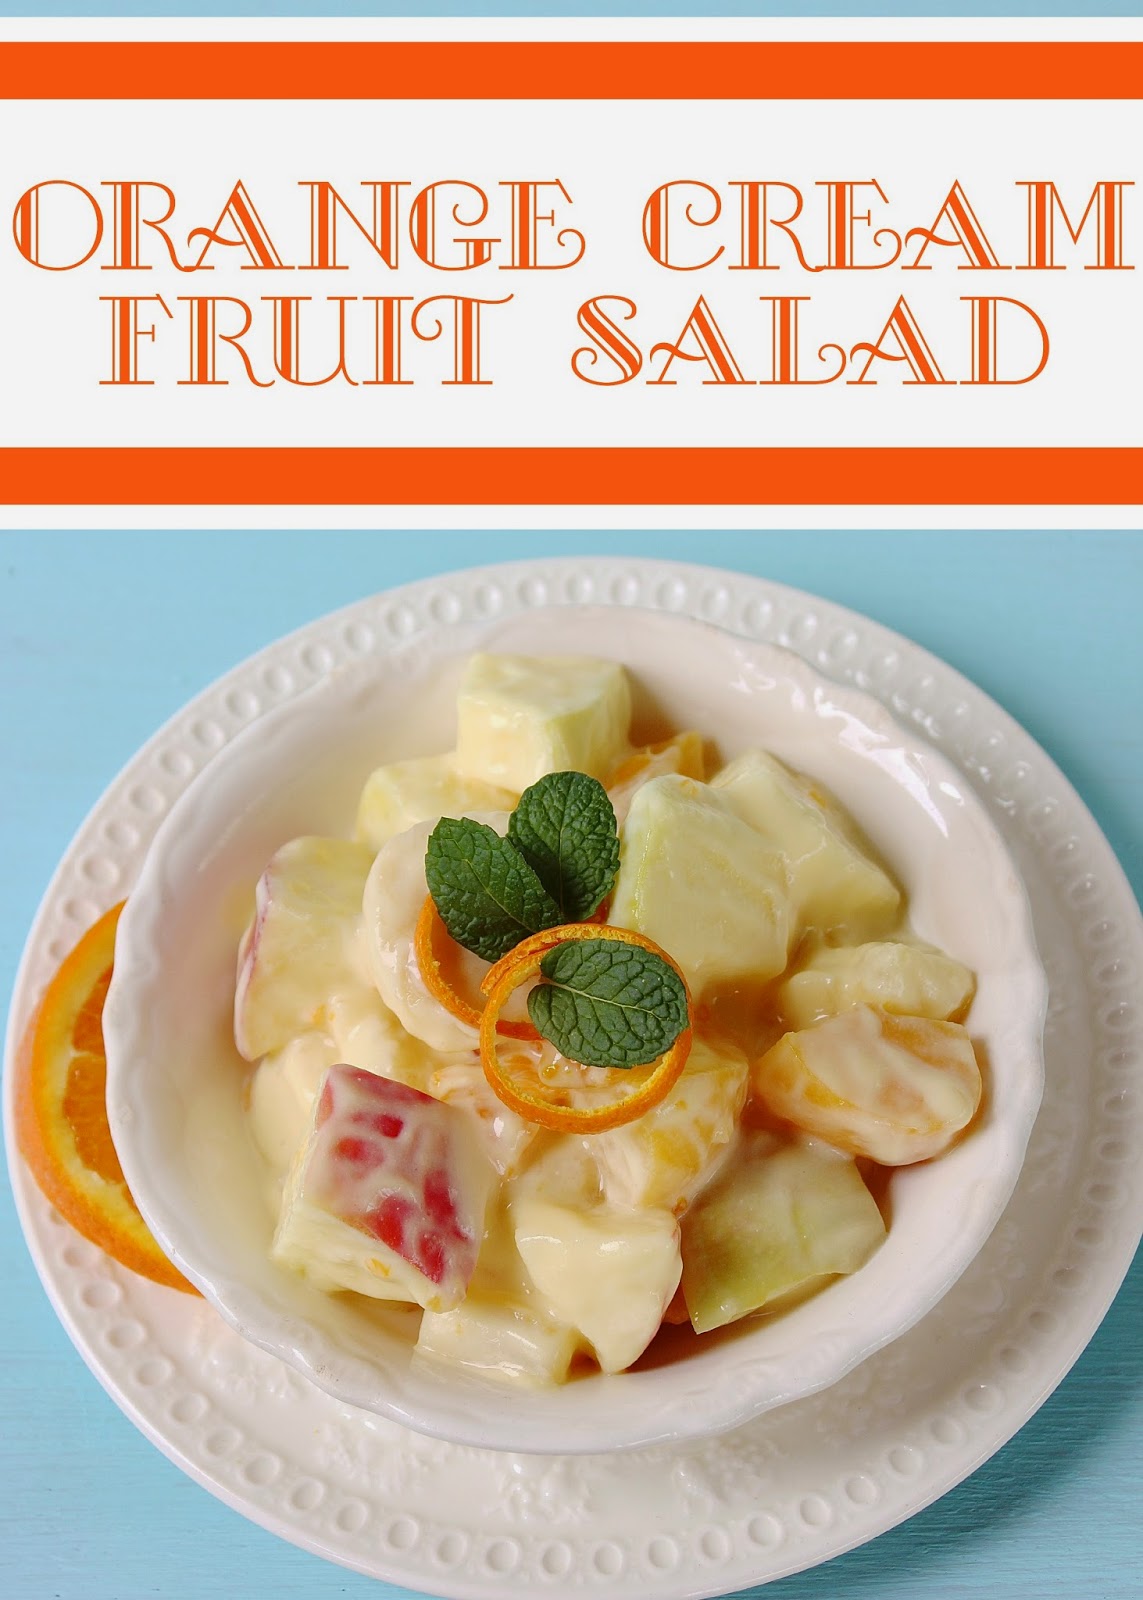 Fruit Salad with Citrus Cream Sauce